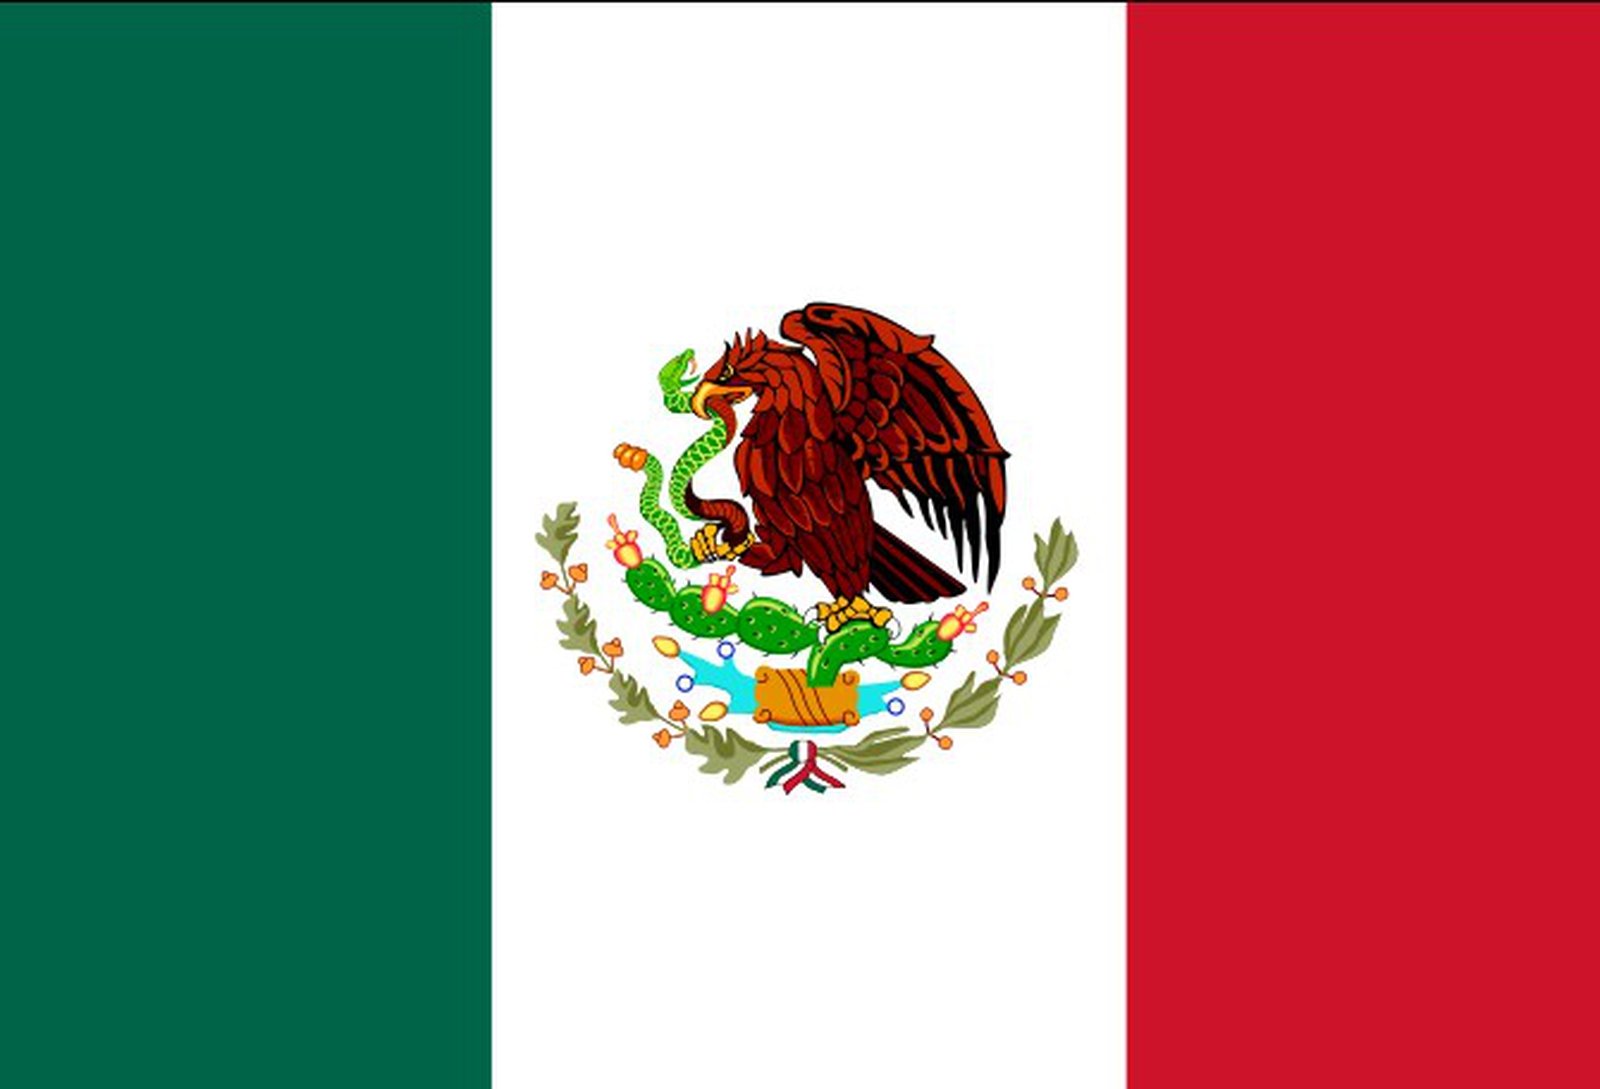 Mexico 2-1 Ecuador